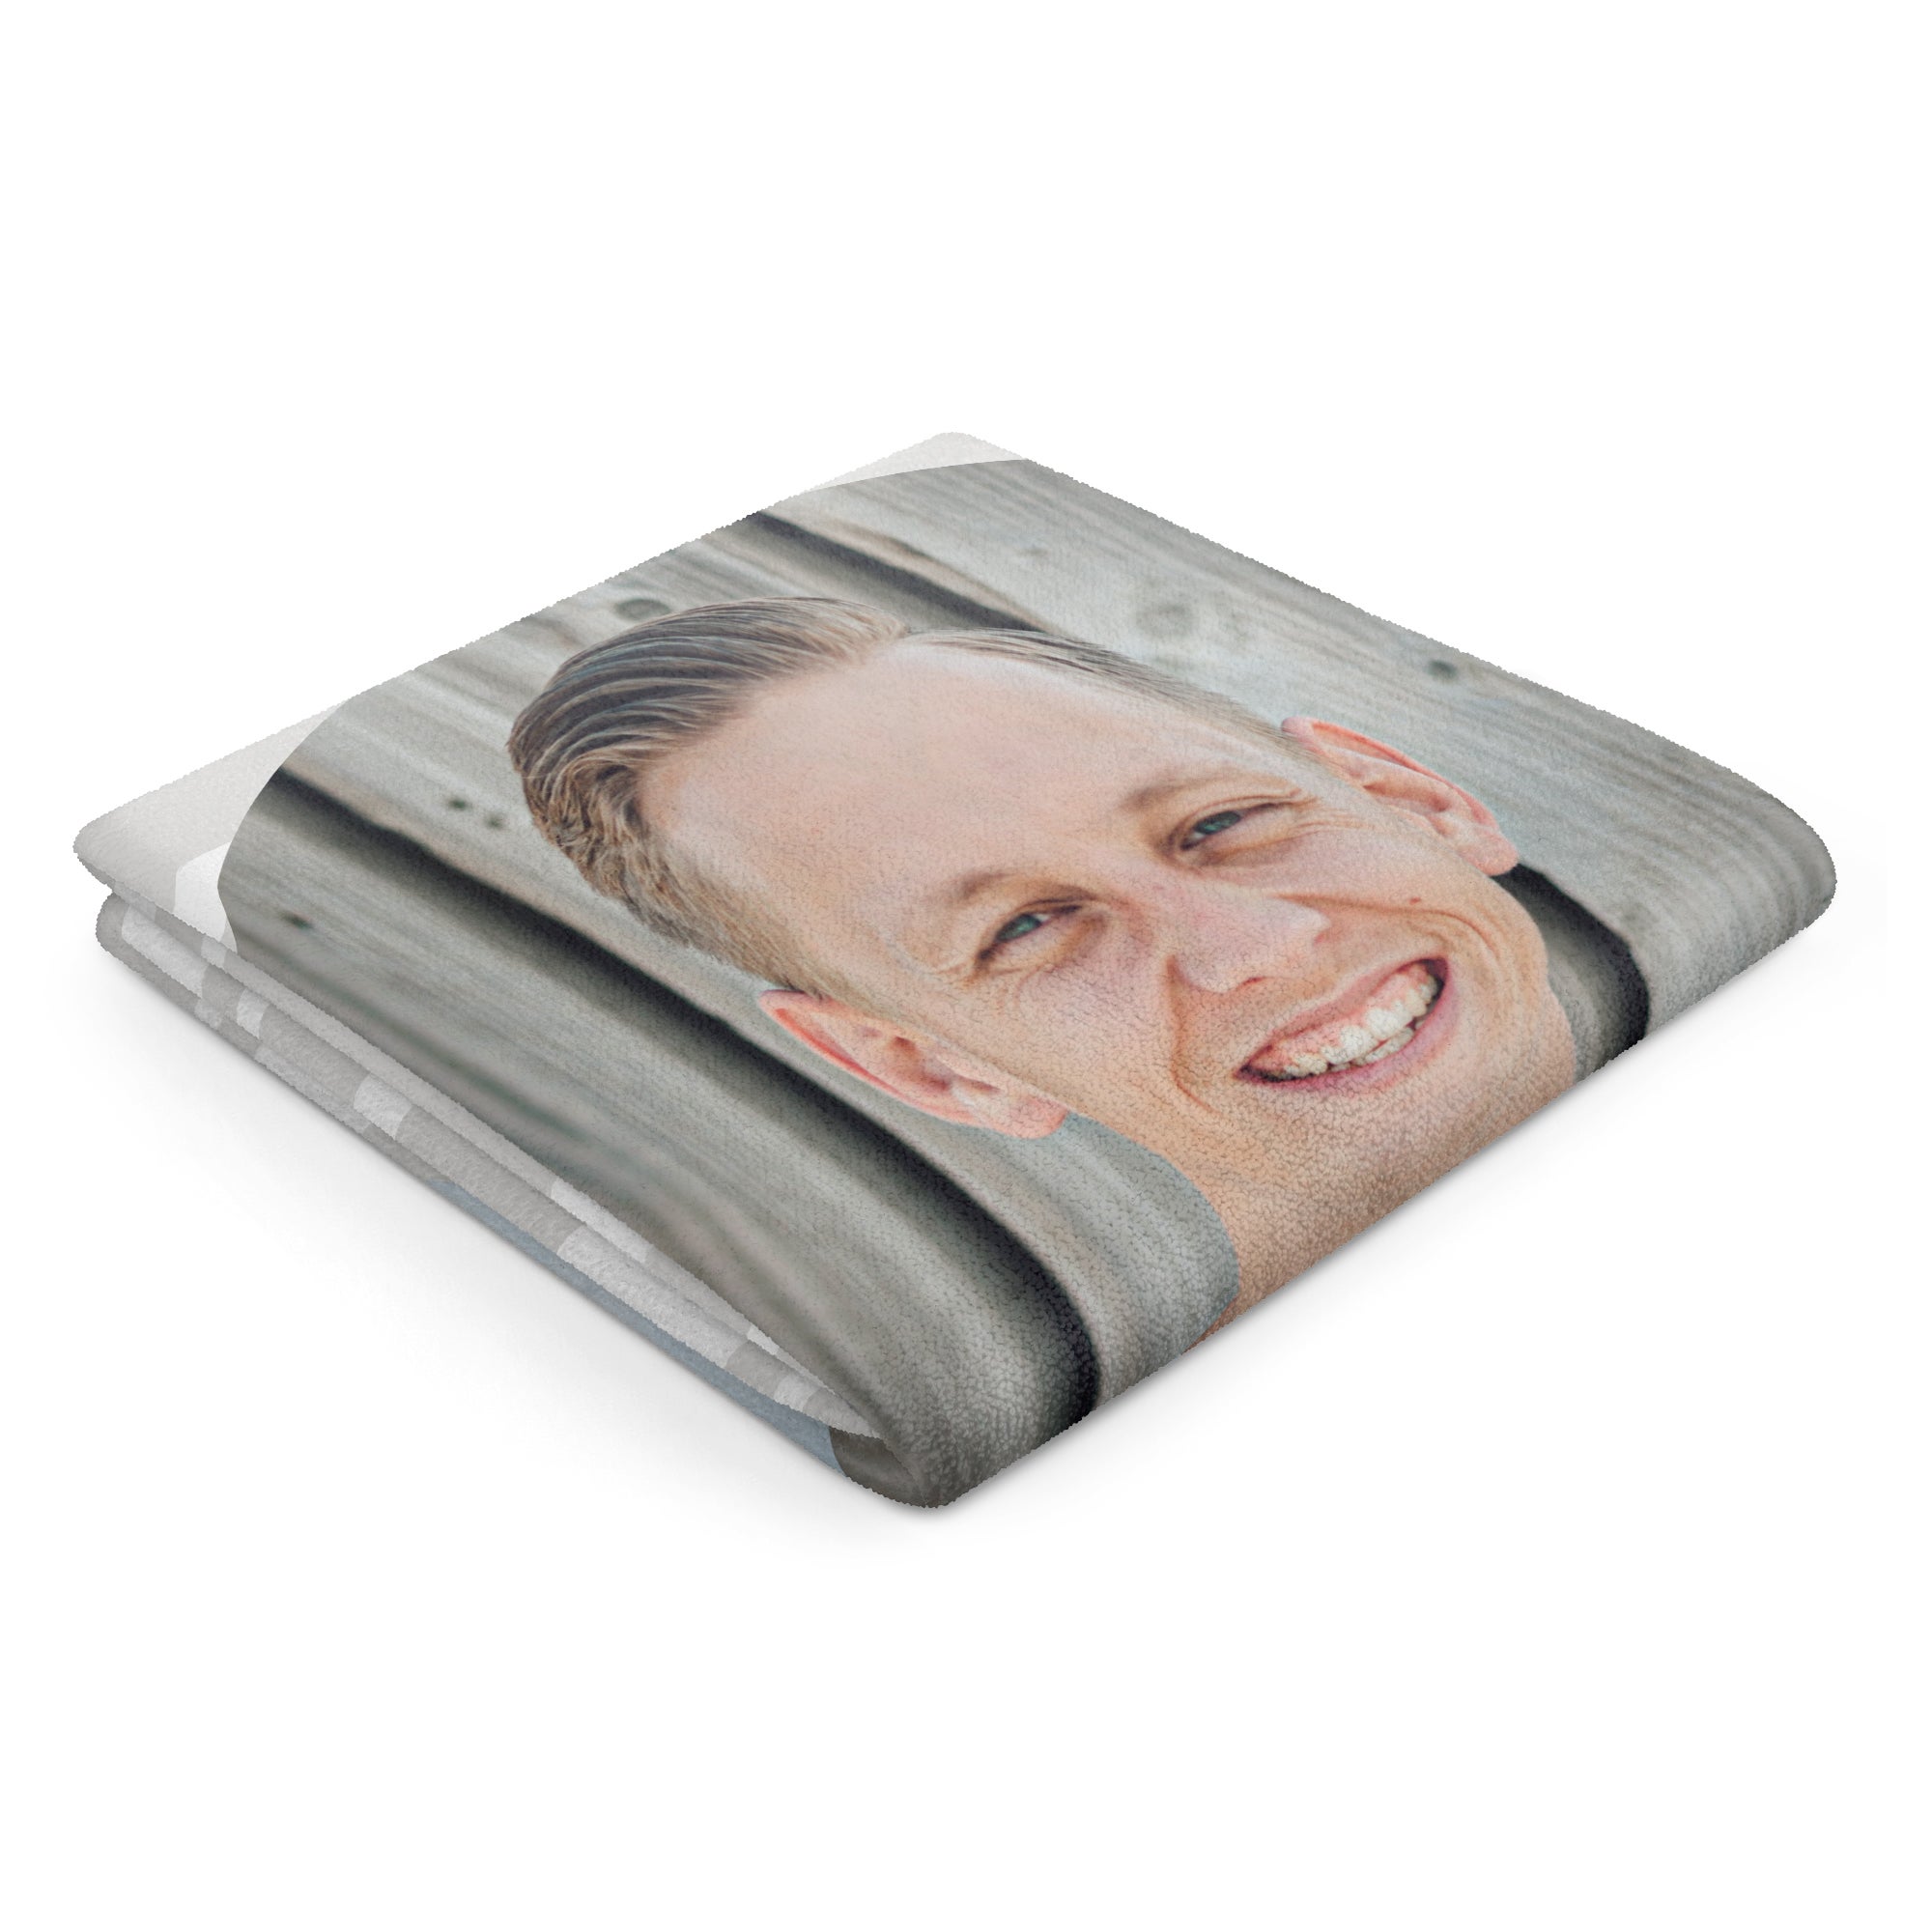 Personalised towel - 80 x 160 cm